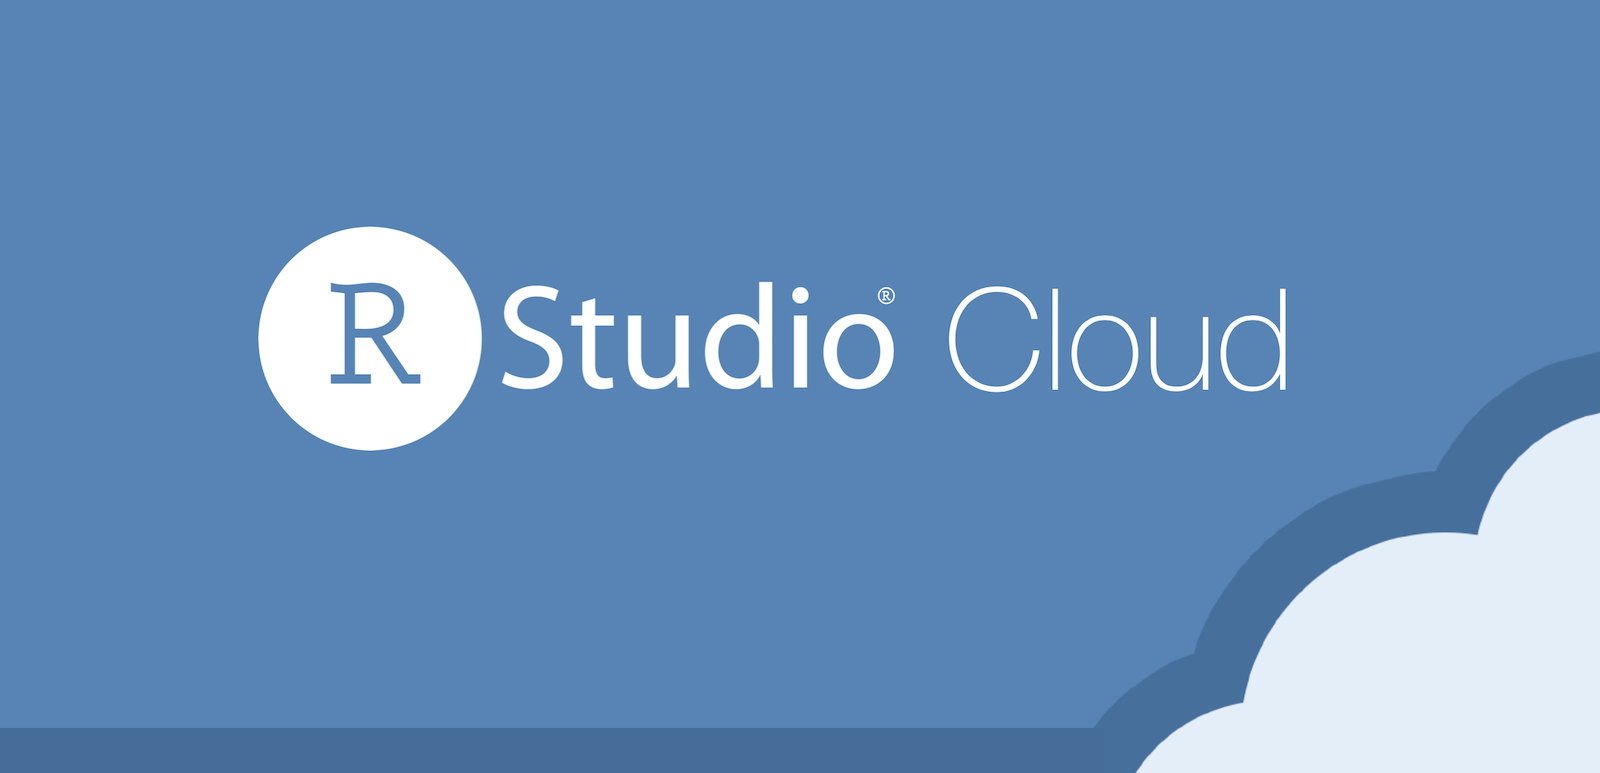 RStudio Cloud text logo